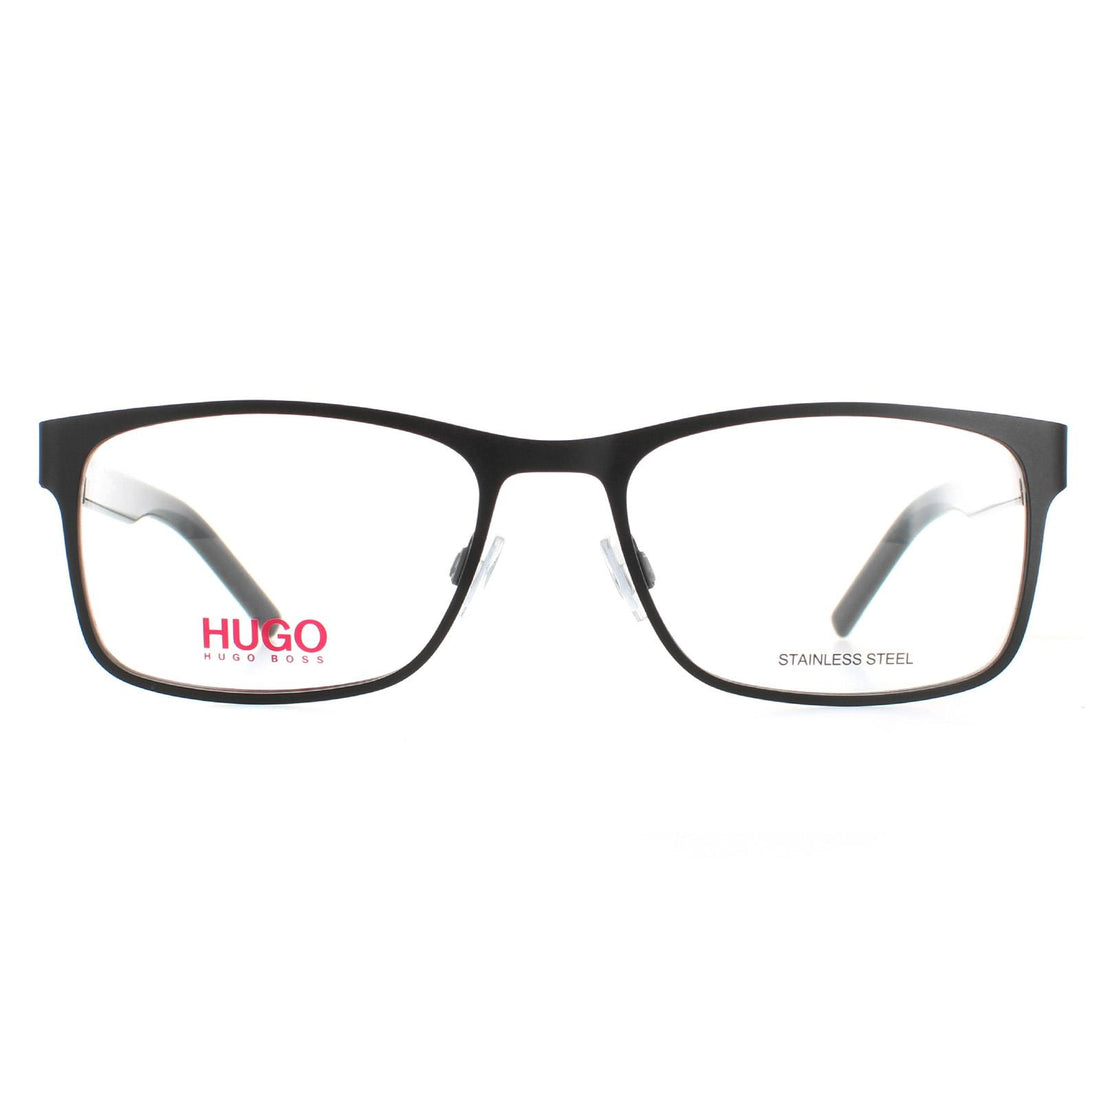 Hugo by Hugo Boss Glasses Frames HG 1015 003 Matte Black Men